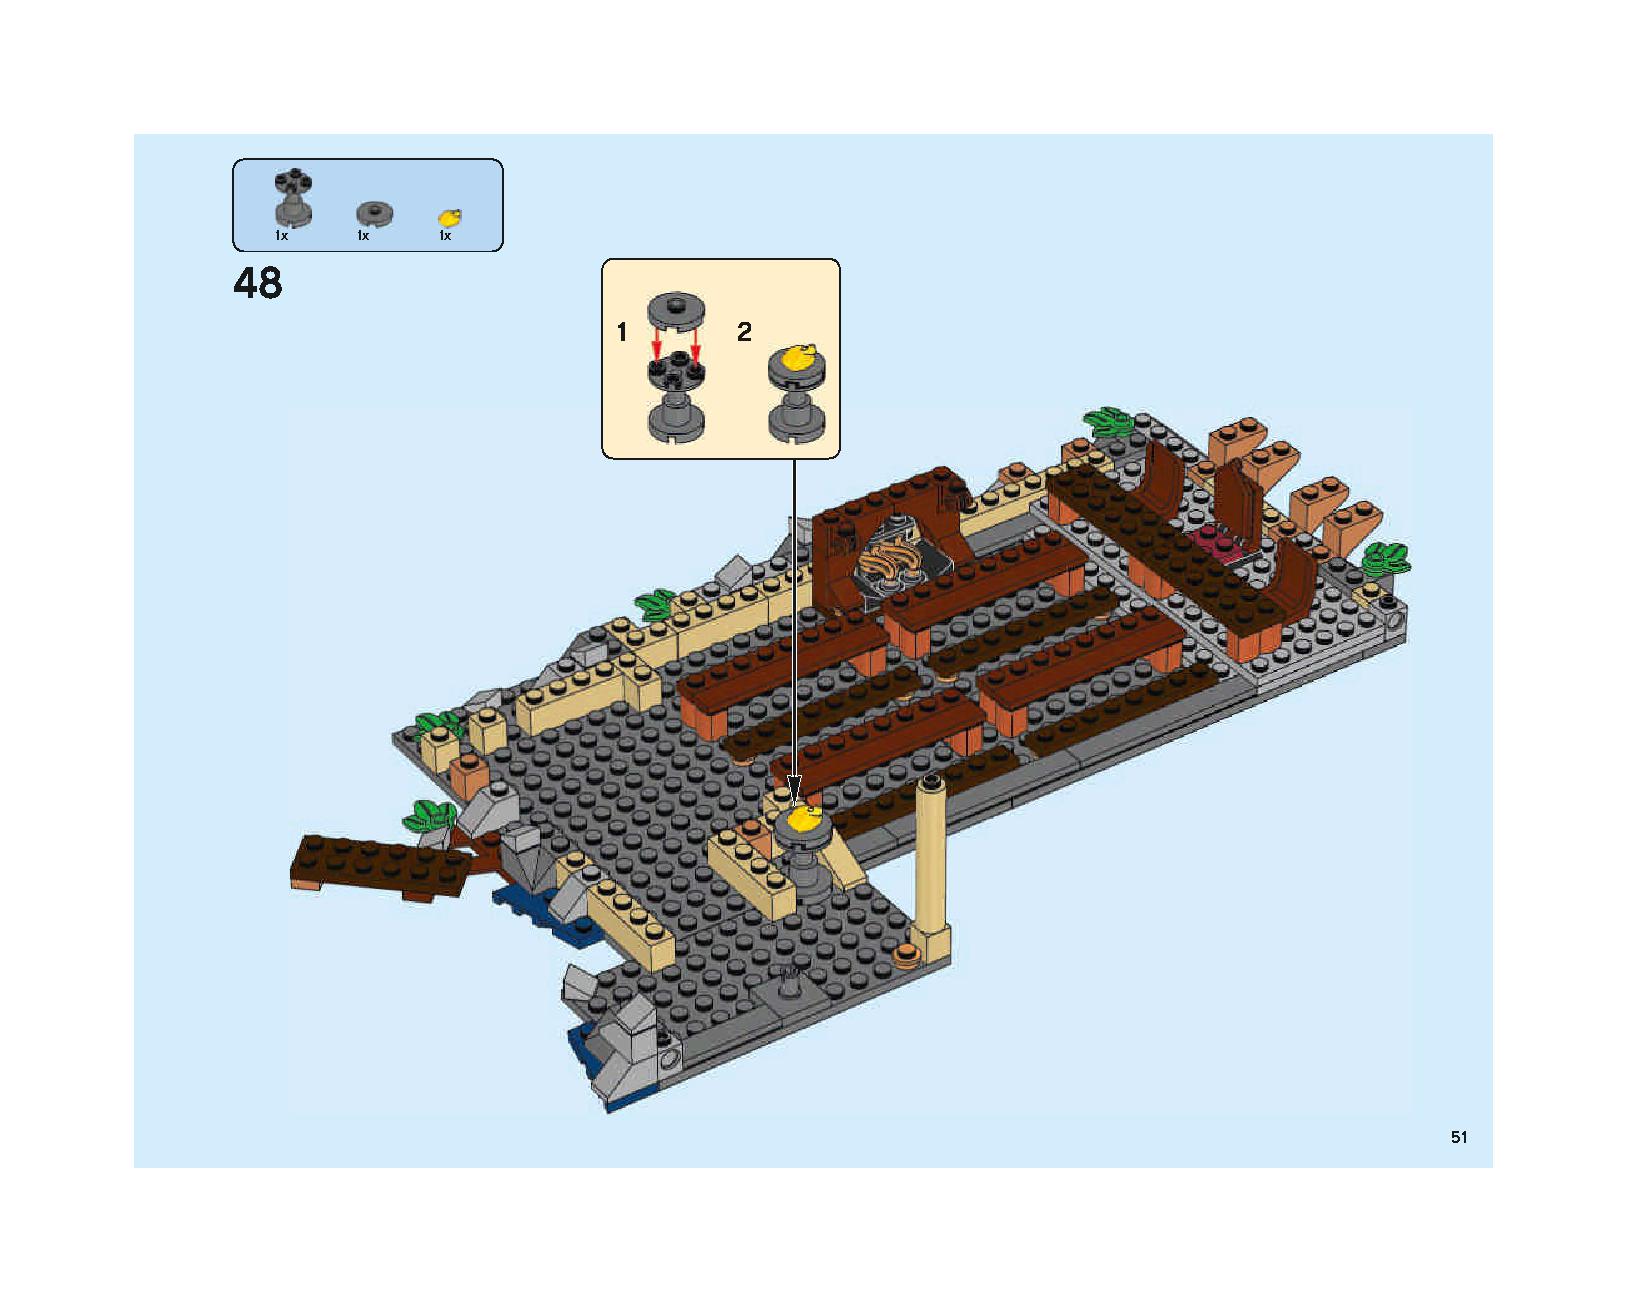 ホグワーツの大広間 75954 レゴの商品情報 レゴの説明書・組立方法 51 page